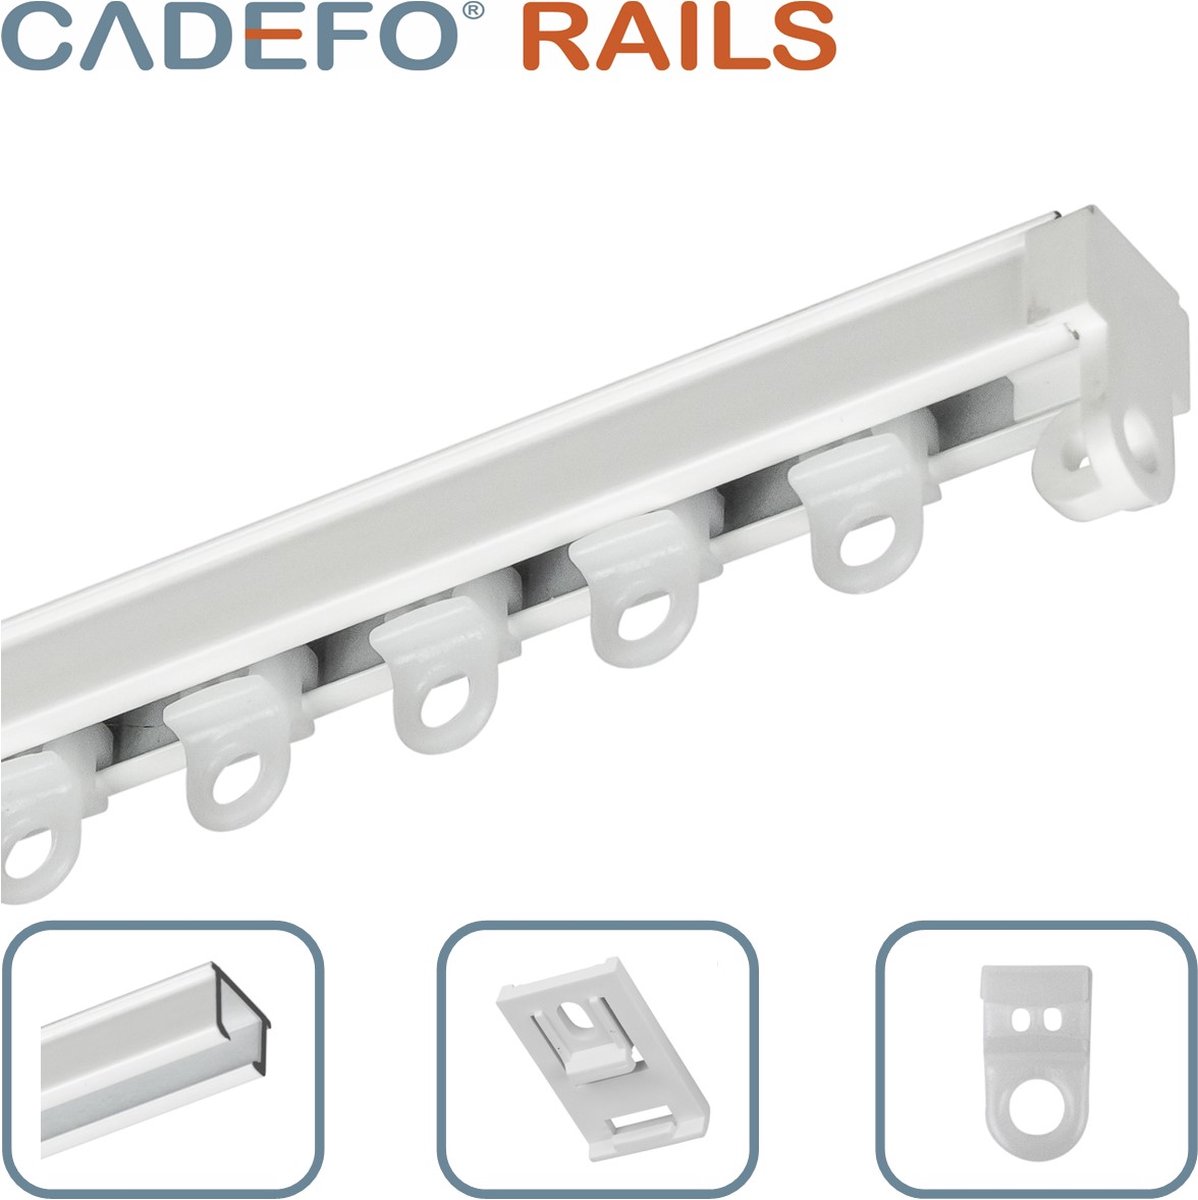 CADEFO RAILS (101 - 150 cm) Gordijnrails - Compleet op maat! - UIT 1 STUK - Leverbaar tot 6 meter - Plafondbevestiging - Lengte 138 cm